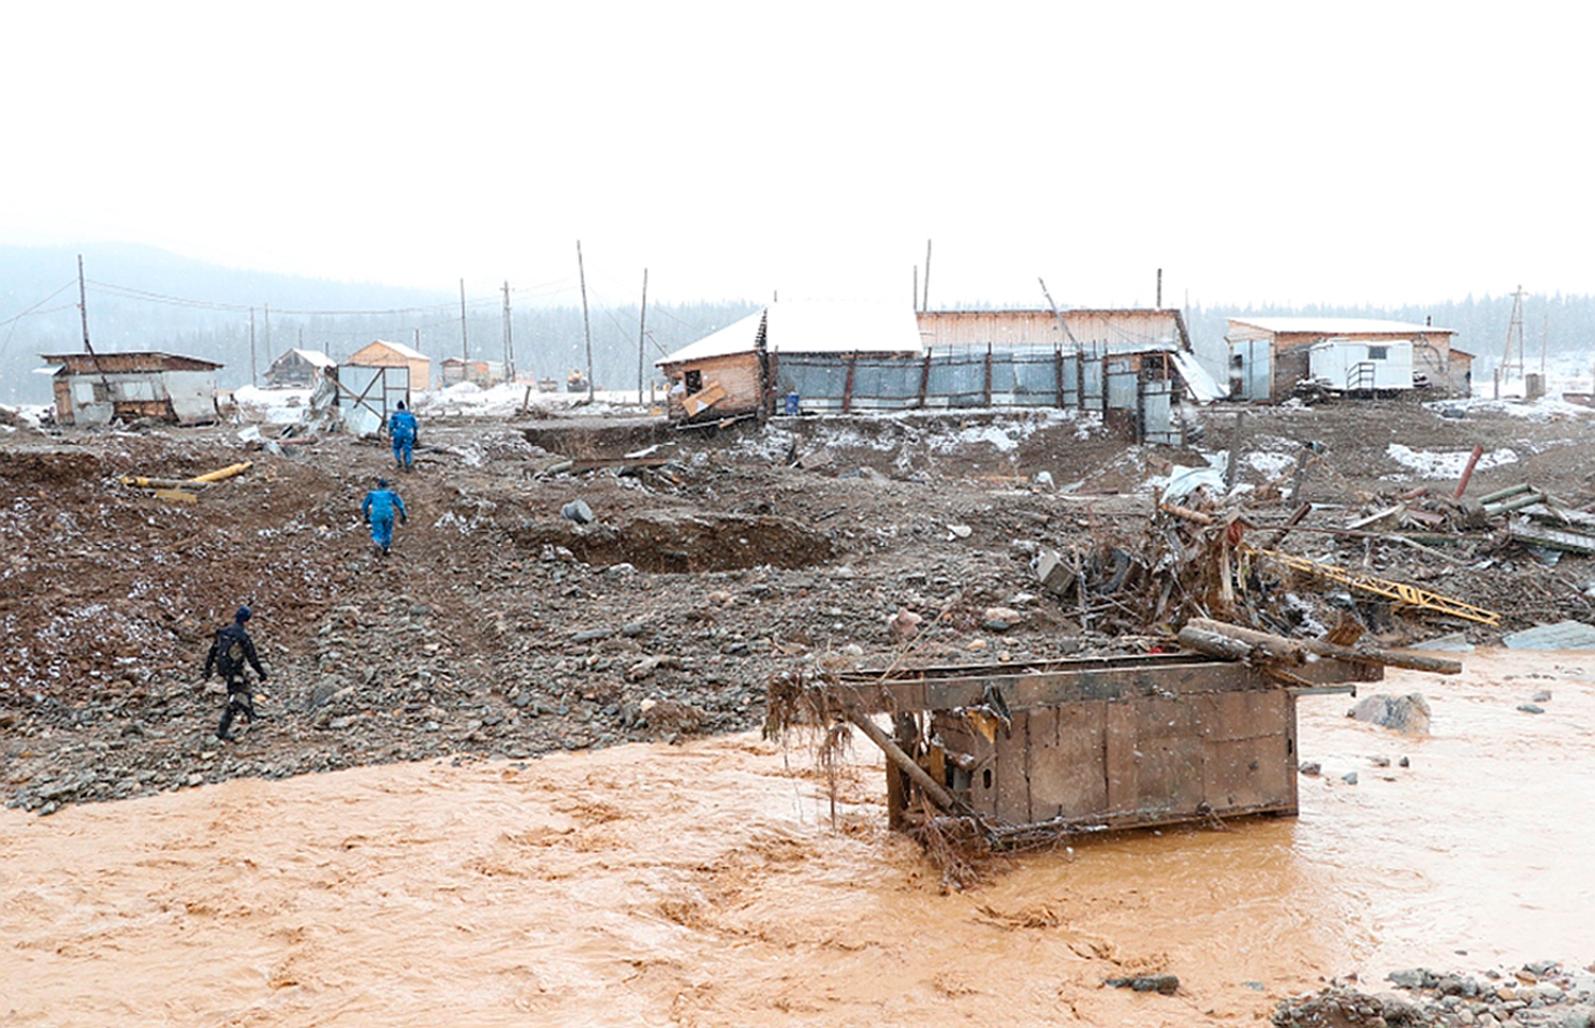 73 personer bodde i lägret som sveptes bort av vattenmassorna. 